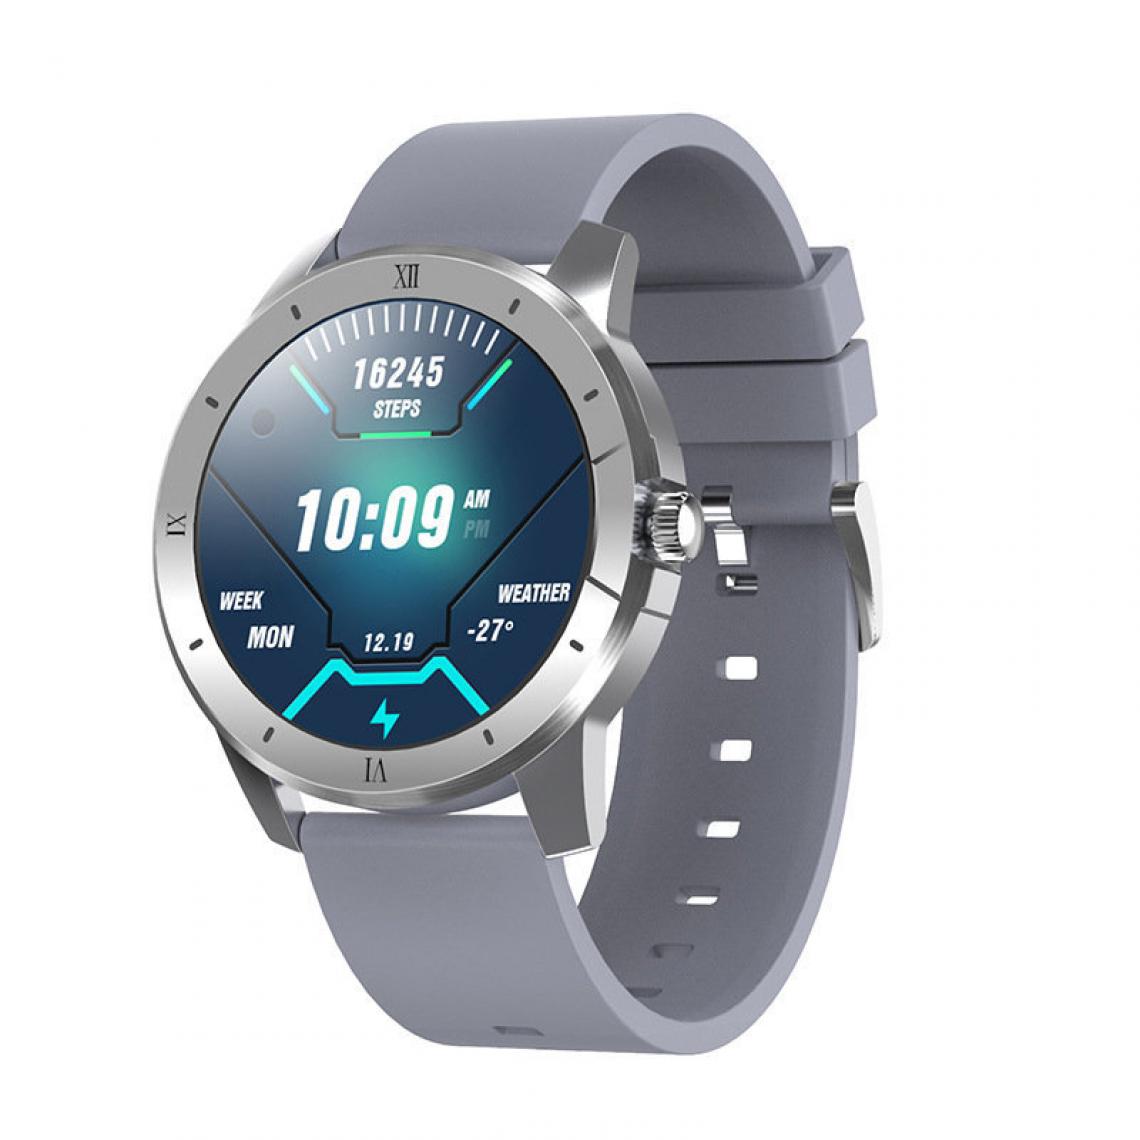 Chronotech Montres - Chronus Smart Watch Men And Women Ip68 Waterproof Music Player Bluetooth Call Sport Smart Watch For Android Ios Smart Watch(silver) - Montre connectée